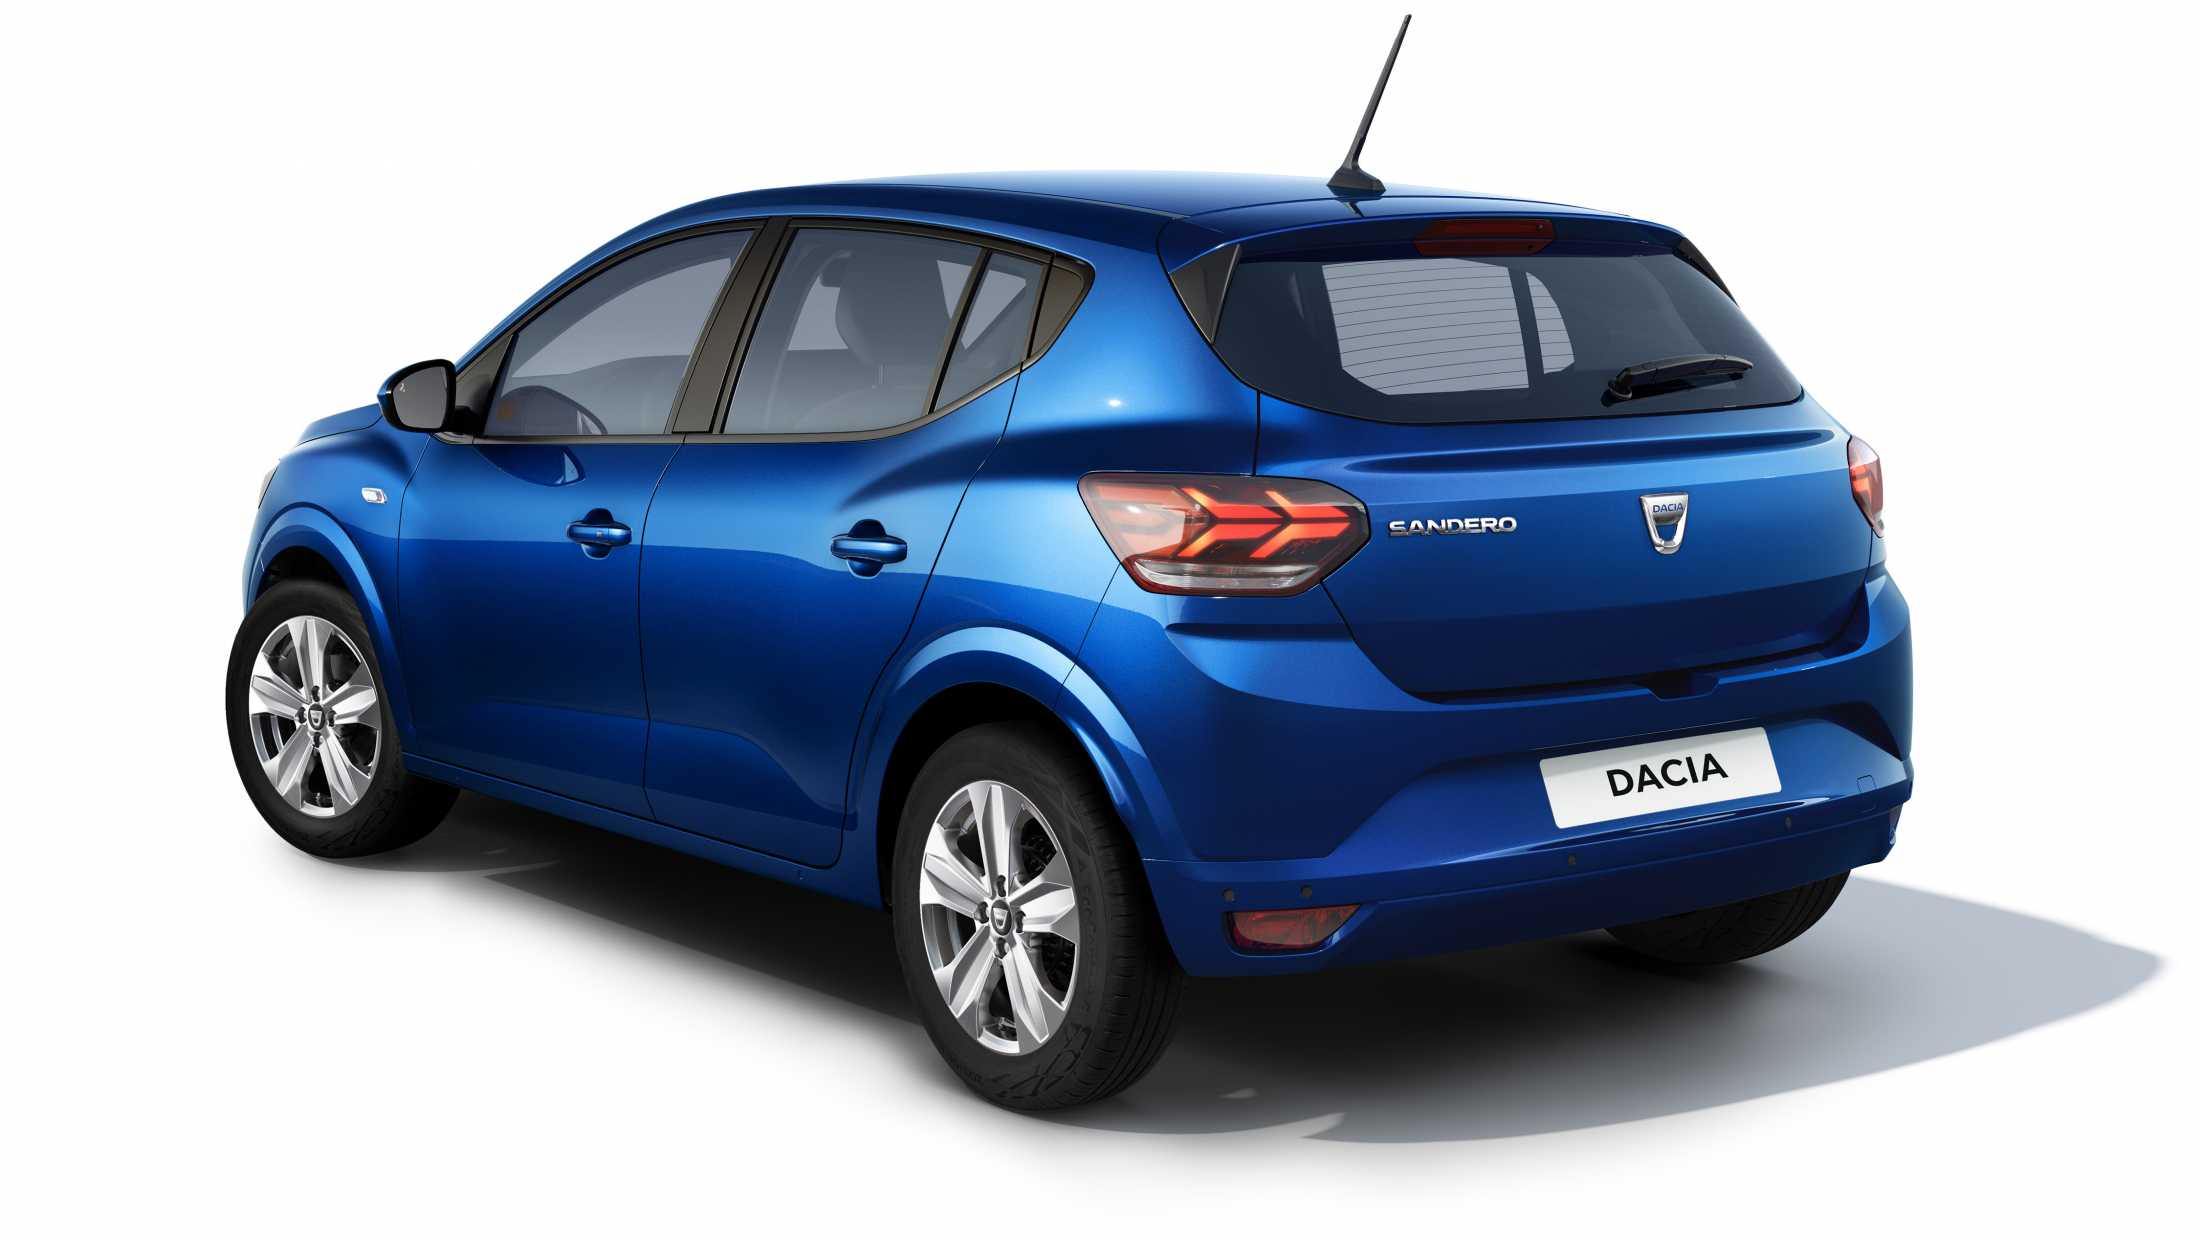 ABD Dacia - Sandero - krachtig en dynamisch uiterlijk